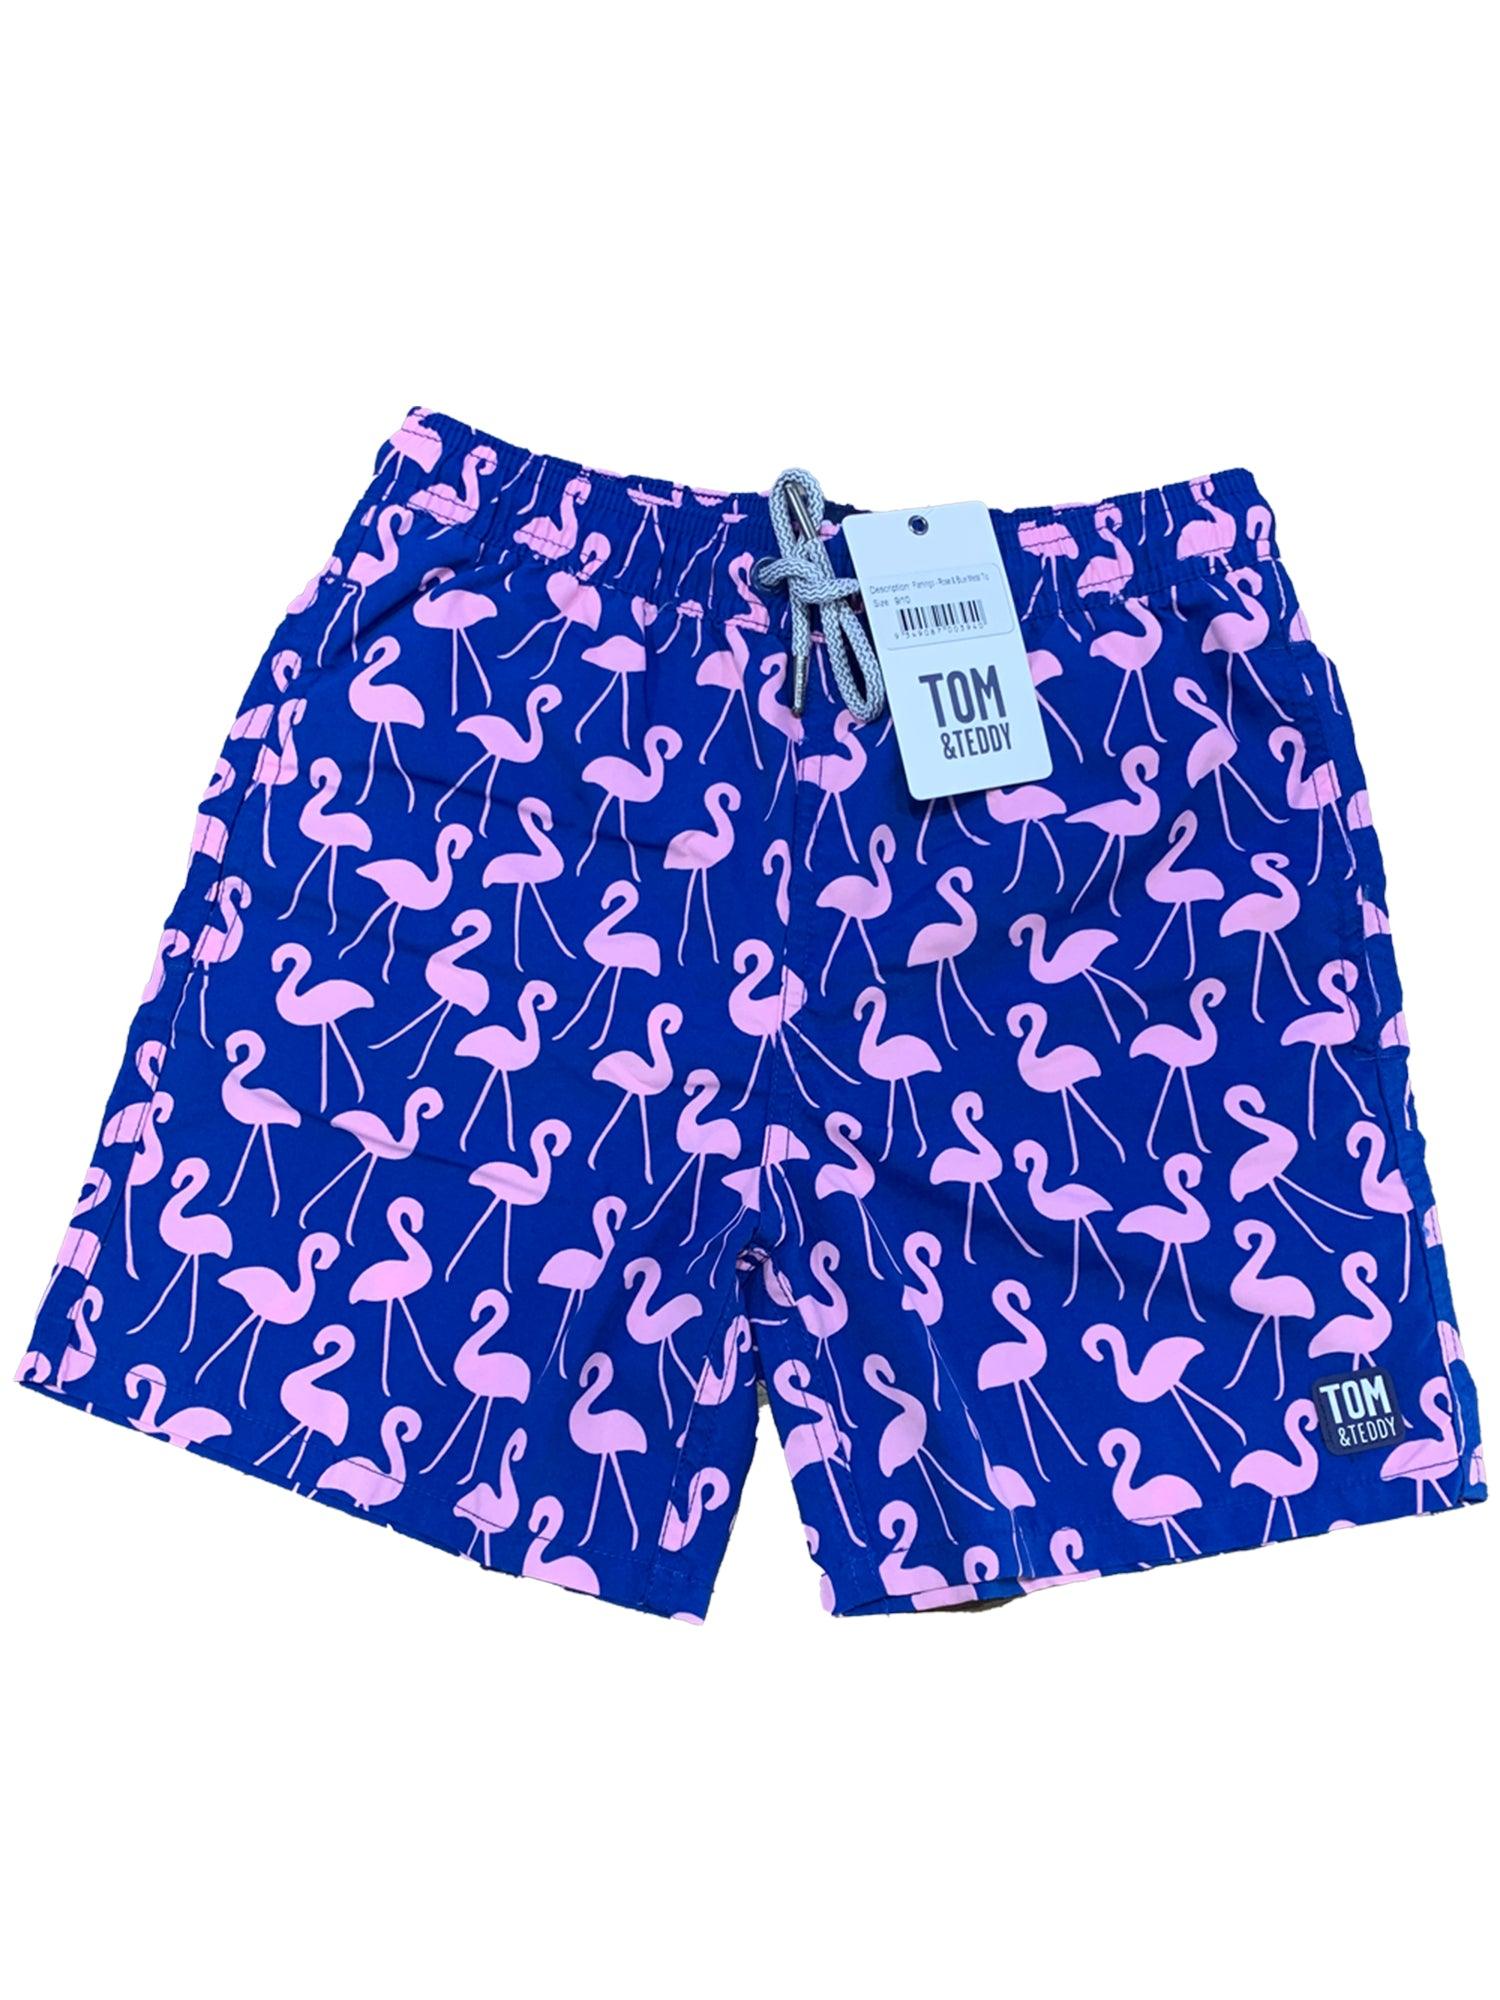 Flamingo - Harrys for Menswear